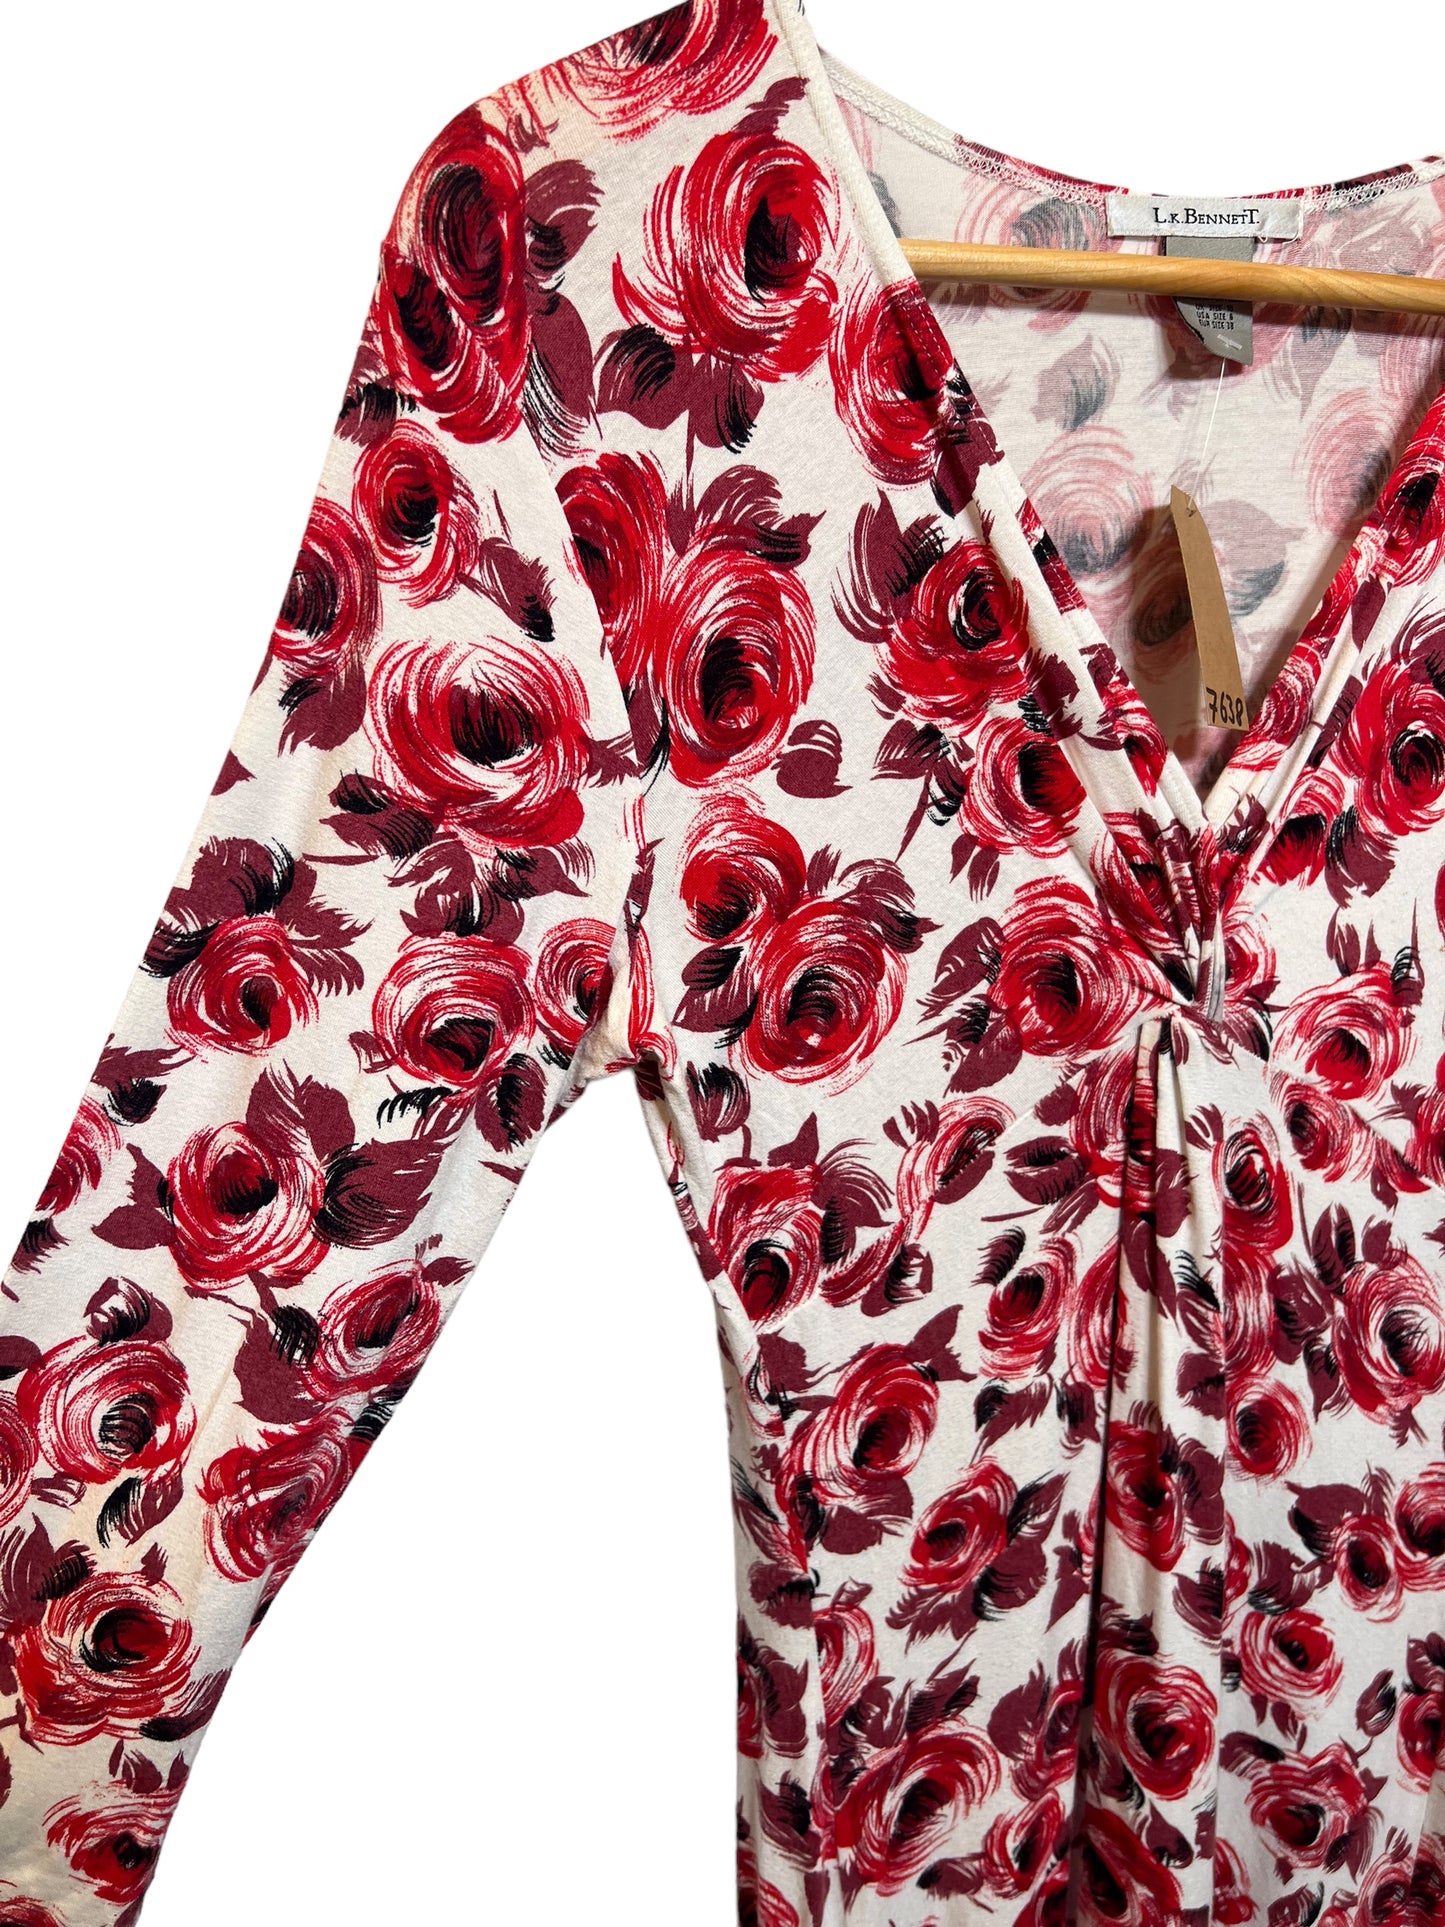 L.K Bennett Women’s Rose Flower Dress (Size M)